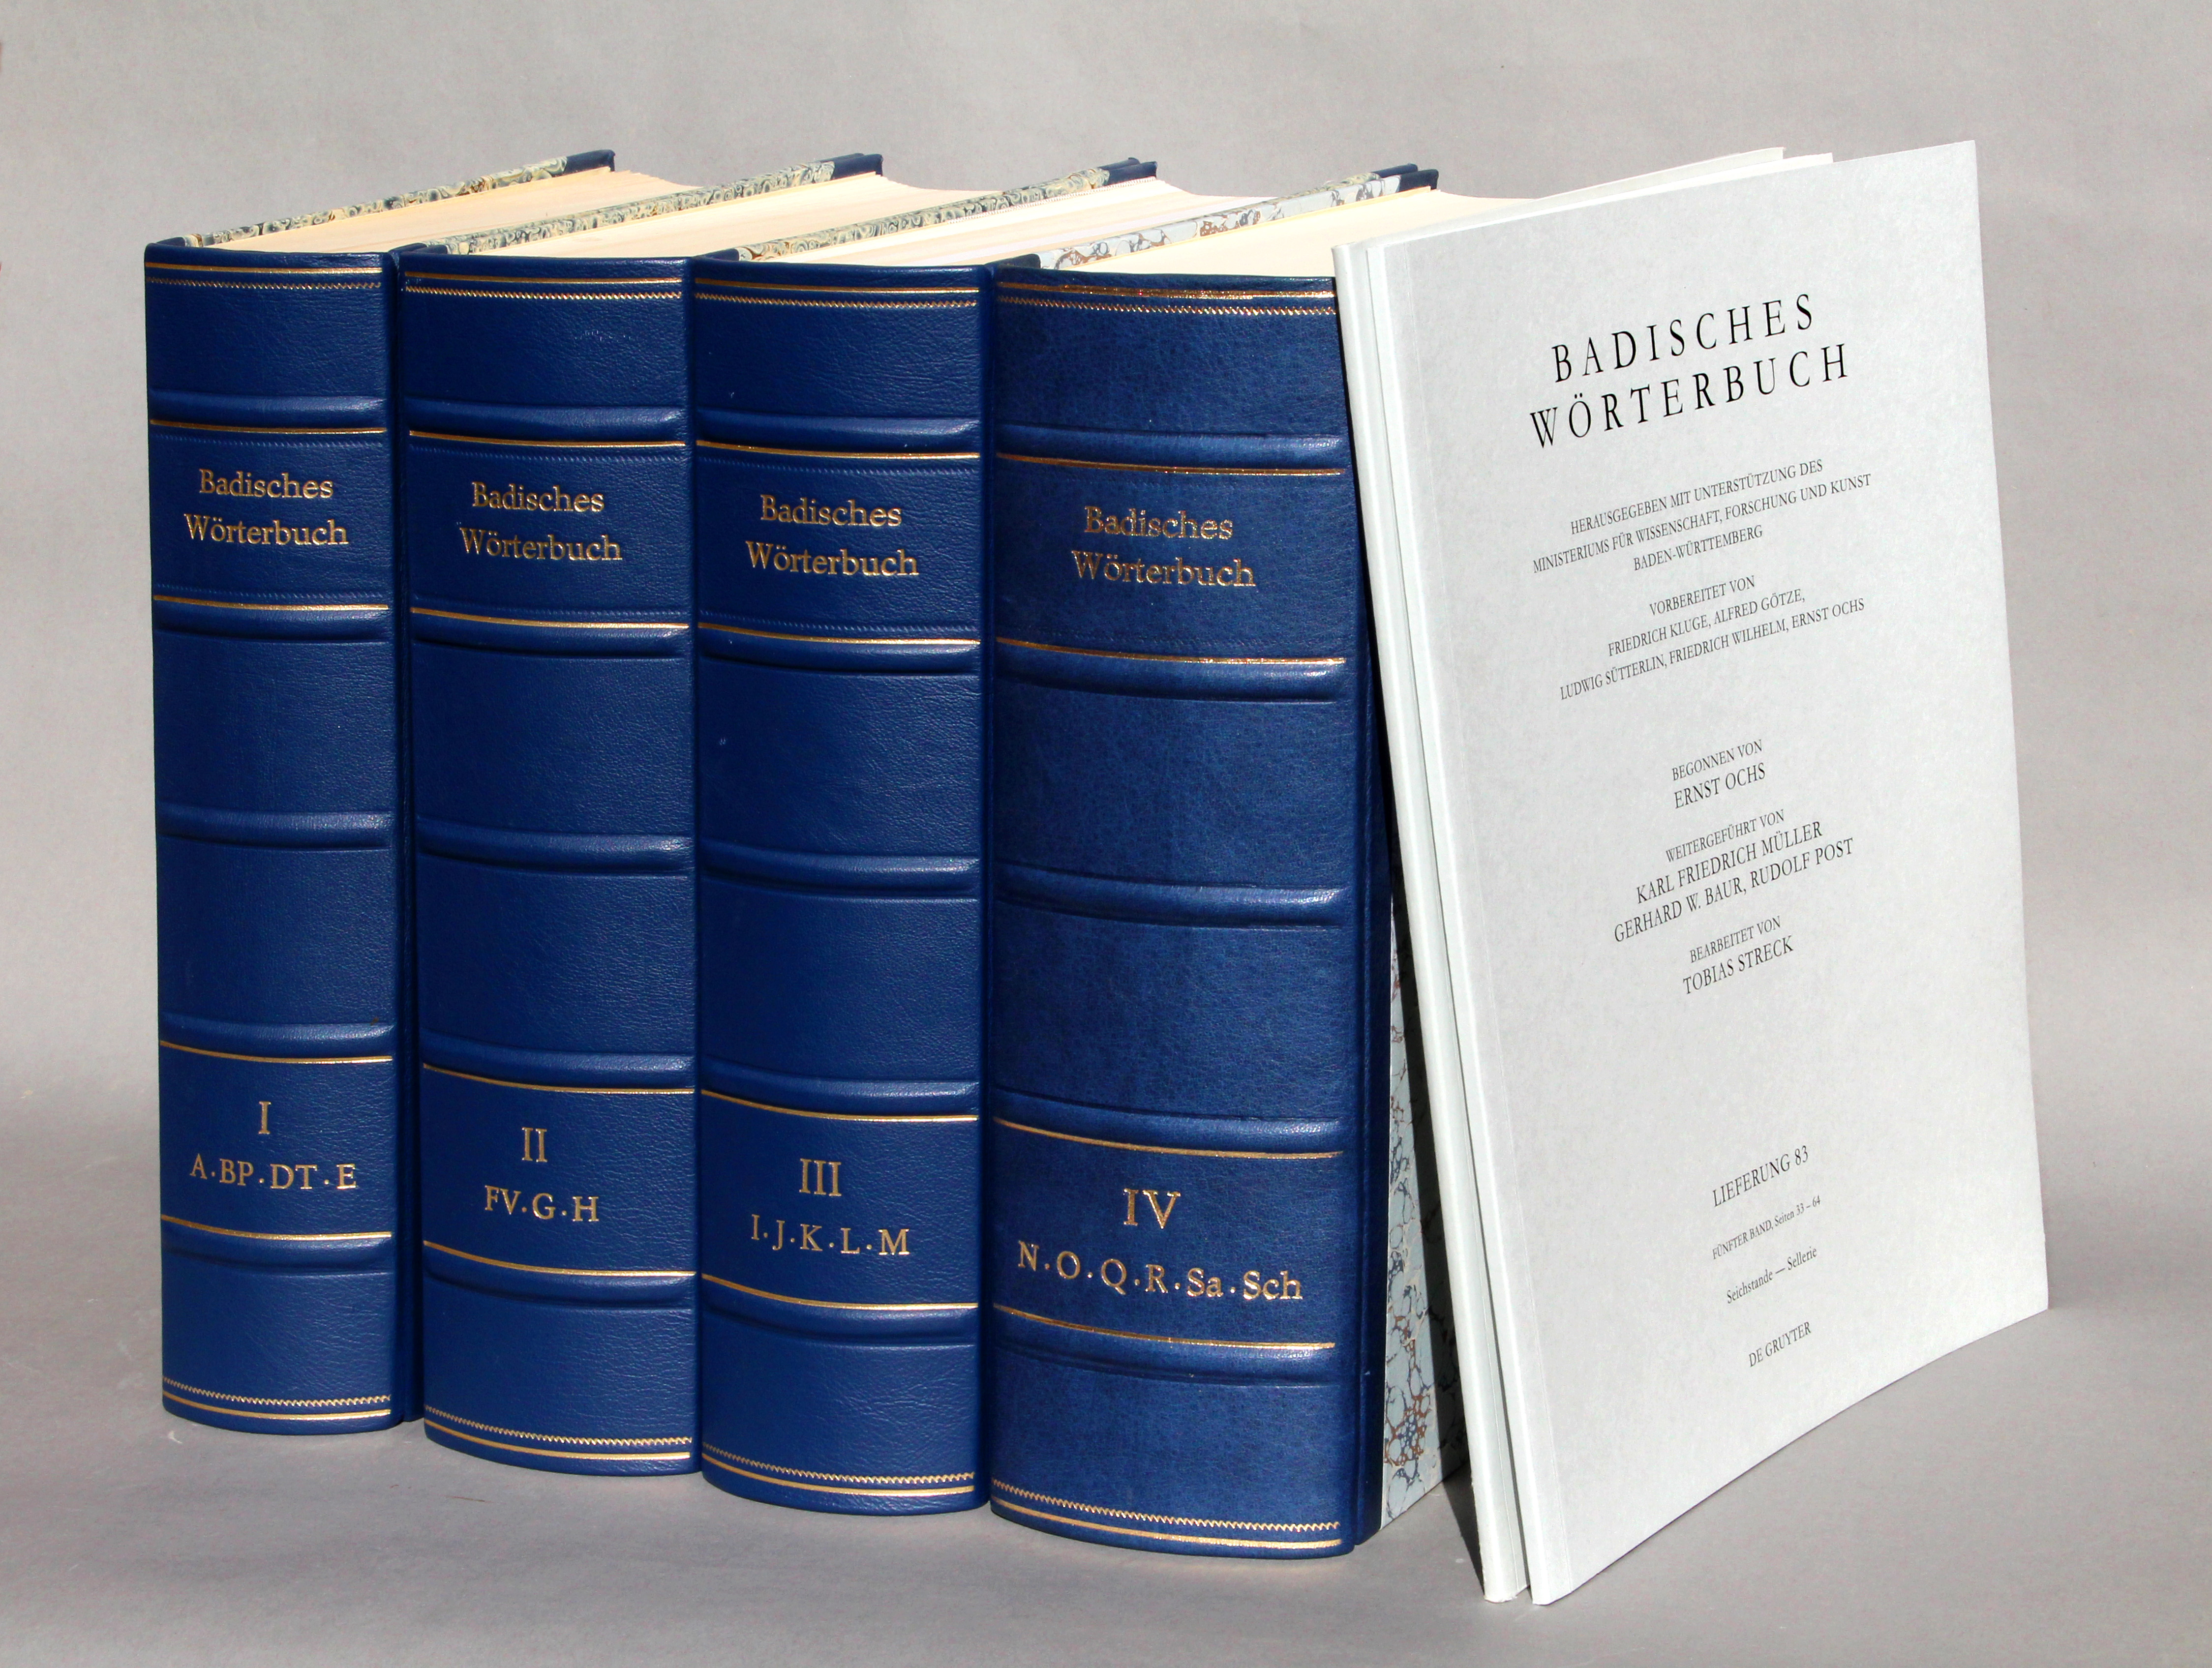 4Bd 
Badisches Wörterbuch